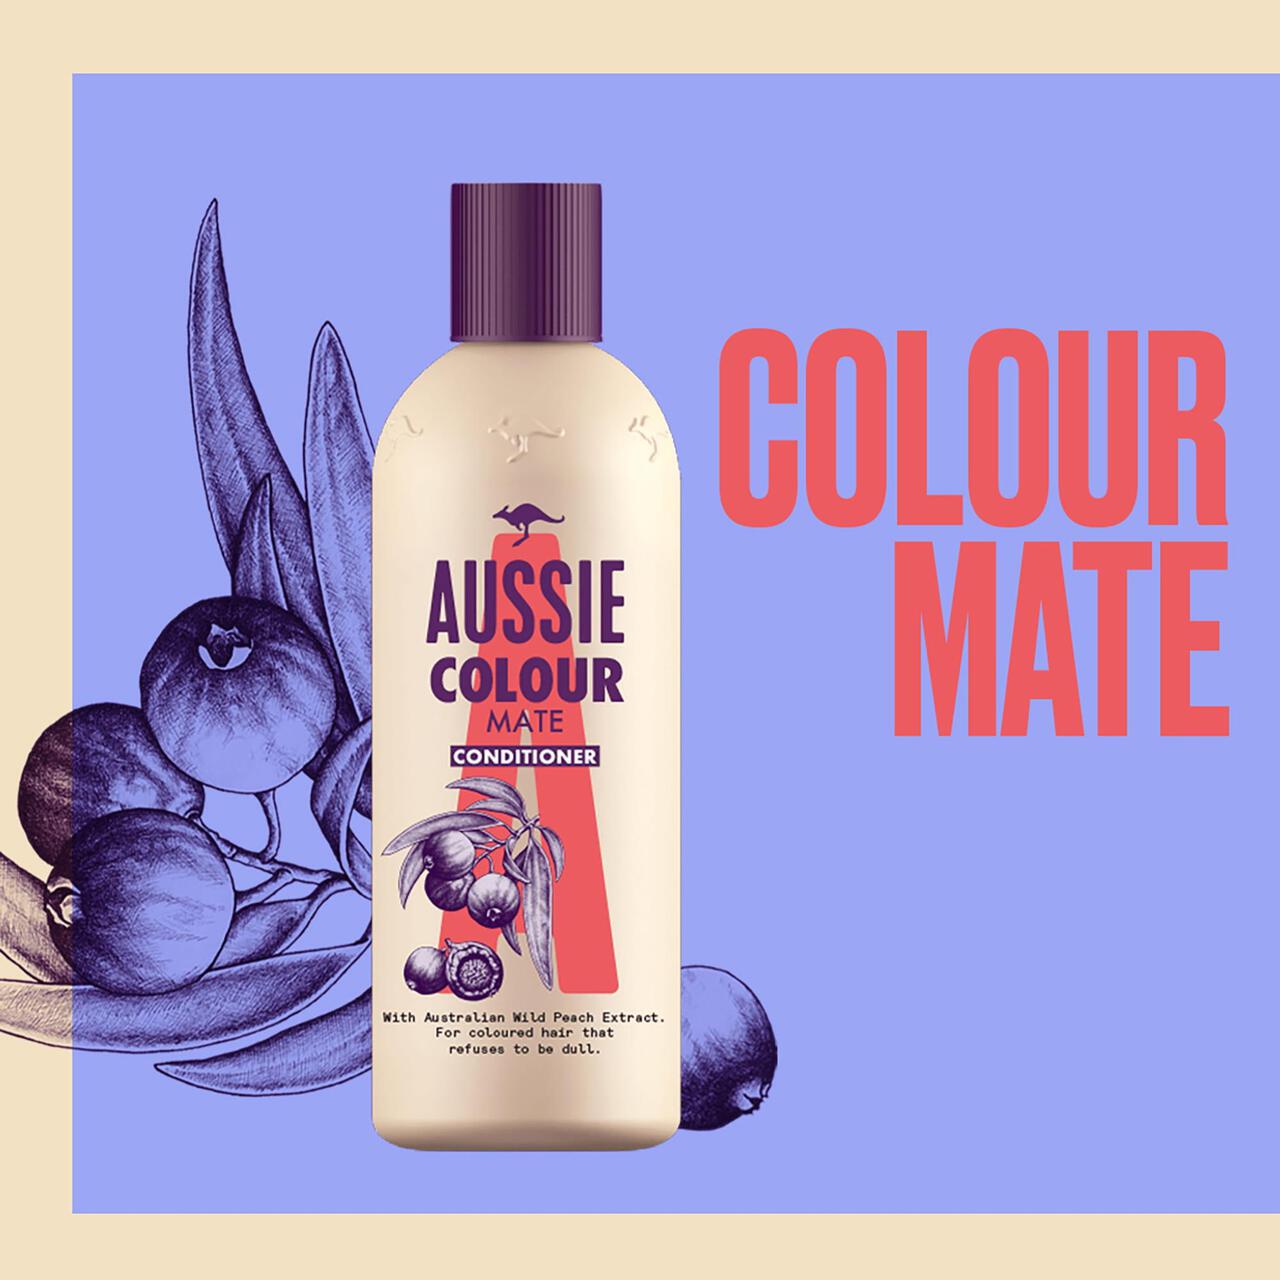 Aussie Colour Mate Hair Conditioner 350ml